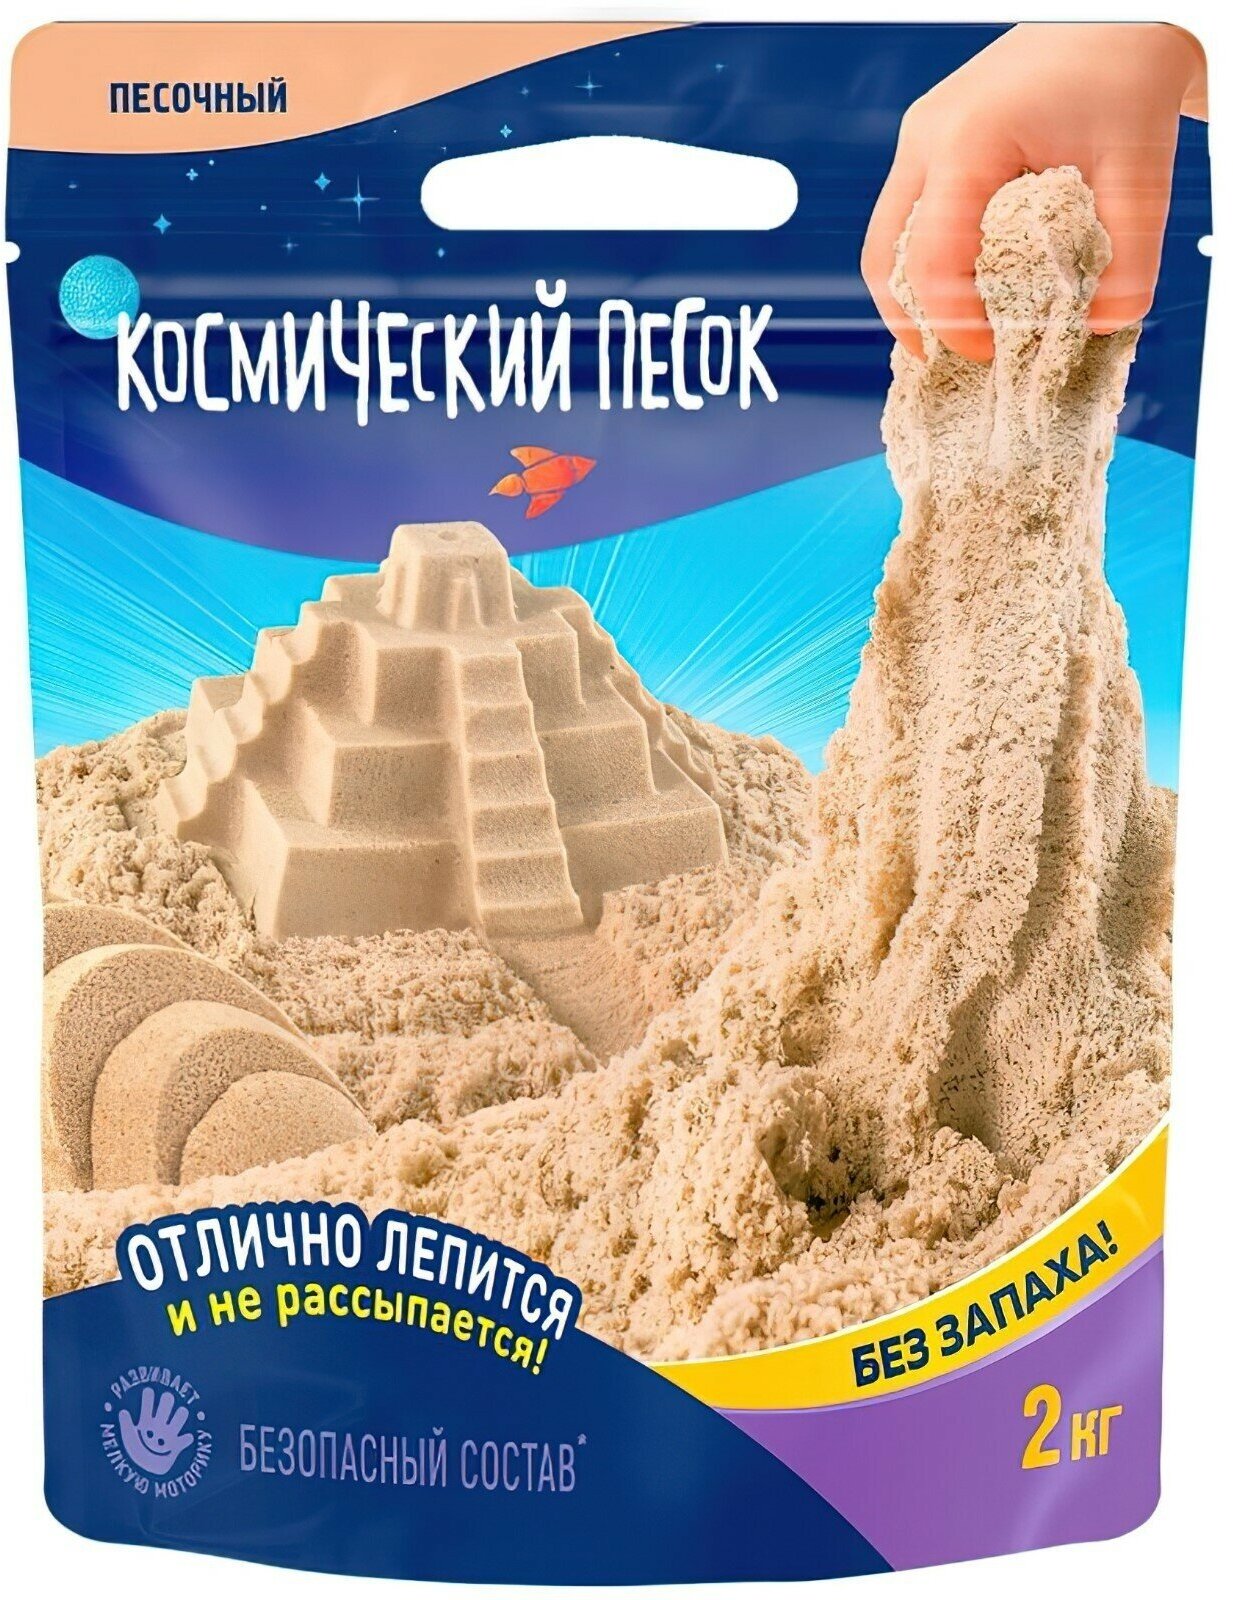 Космический песок, 2 кг, песочный